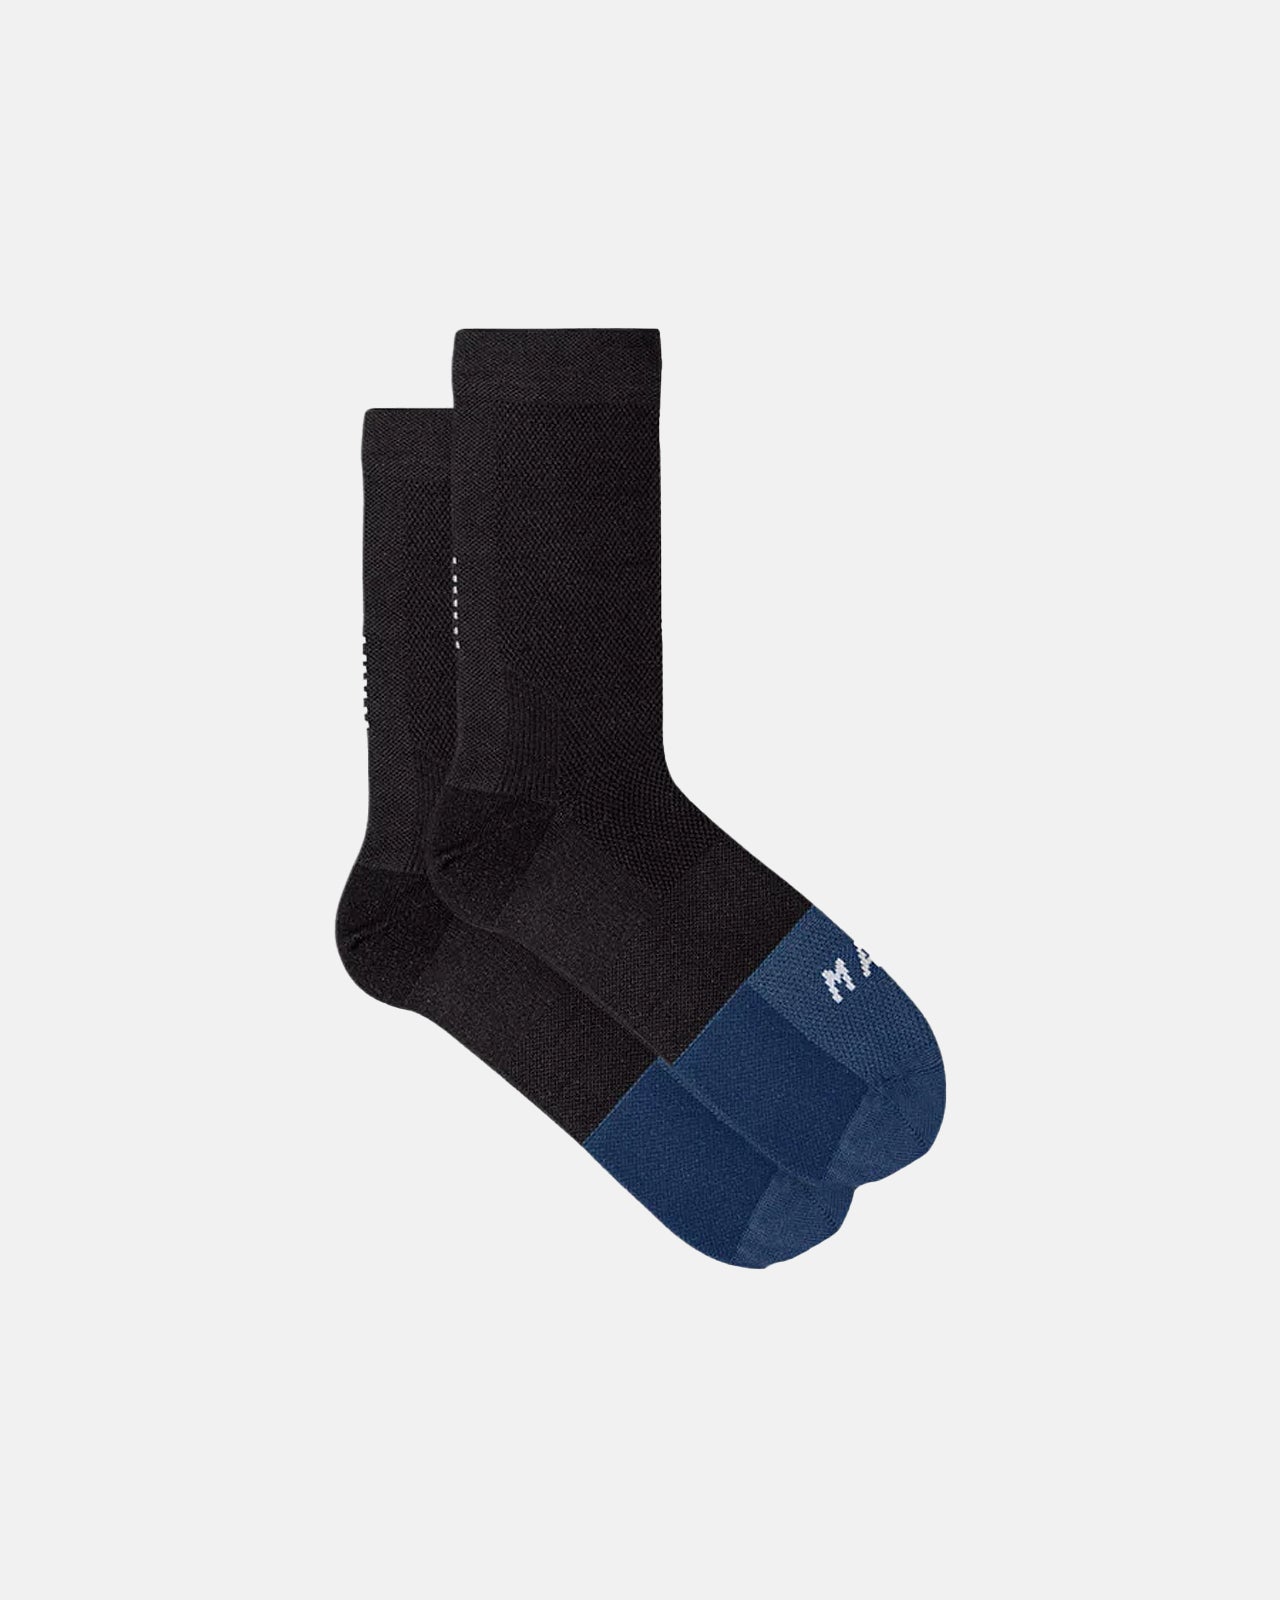 Division Sock Black - MAAP